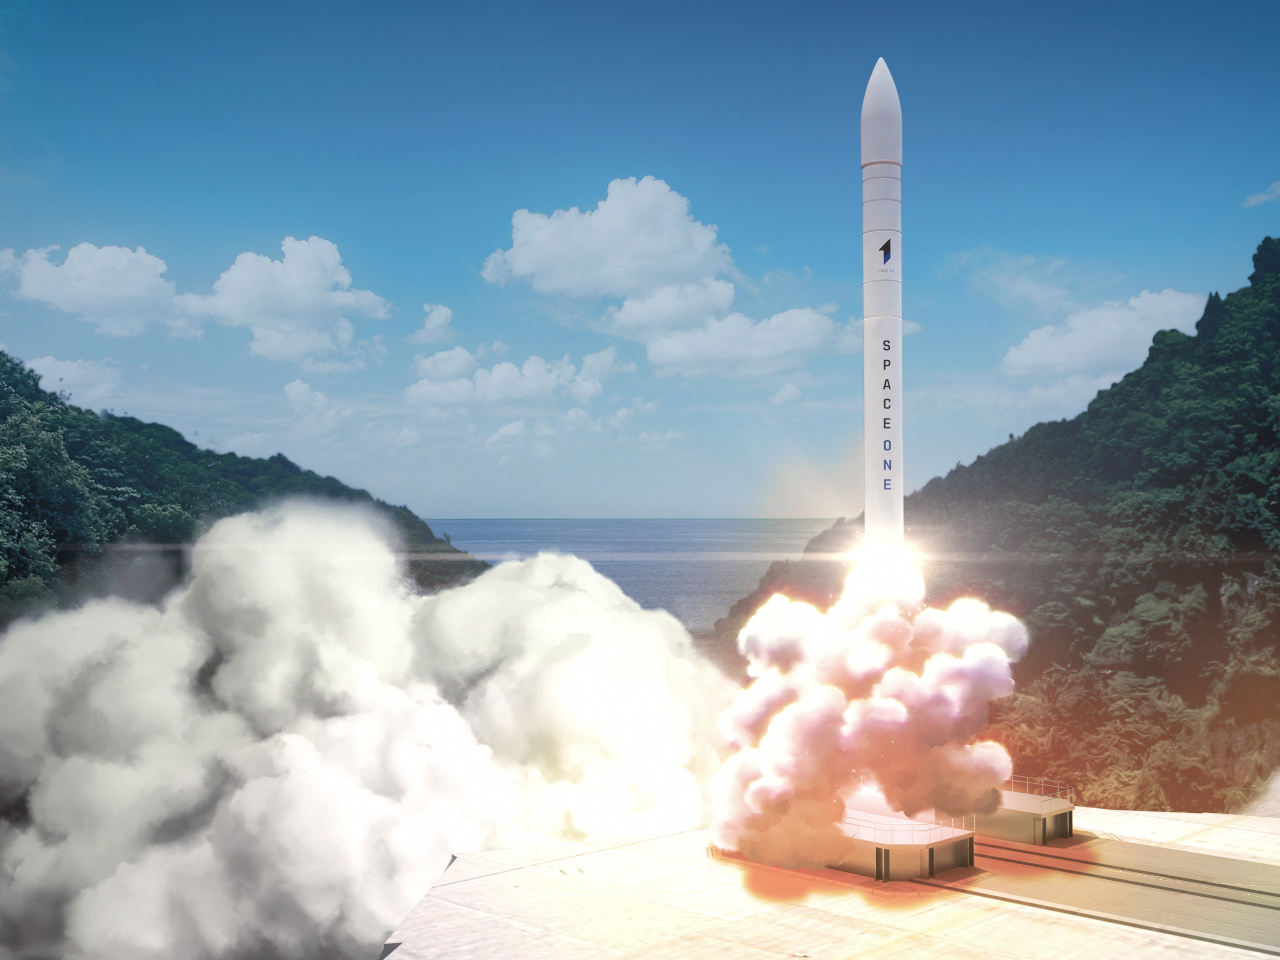 スペースワン、ロケット「カイロス」初号機を3月9日に打ち上げ